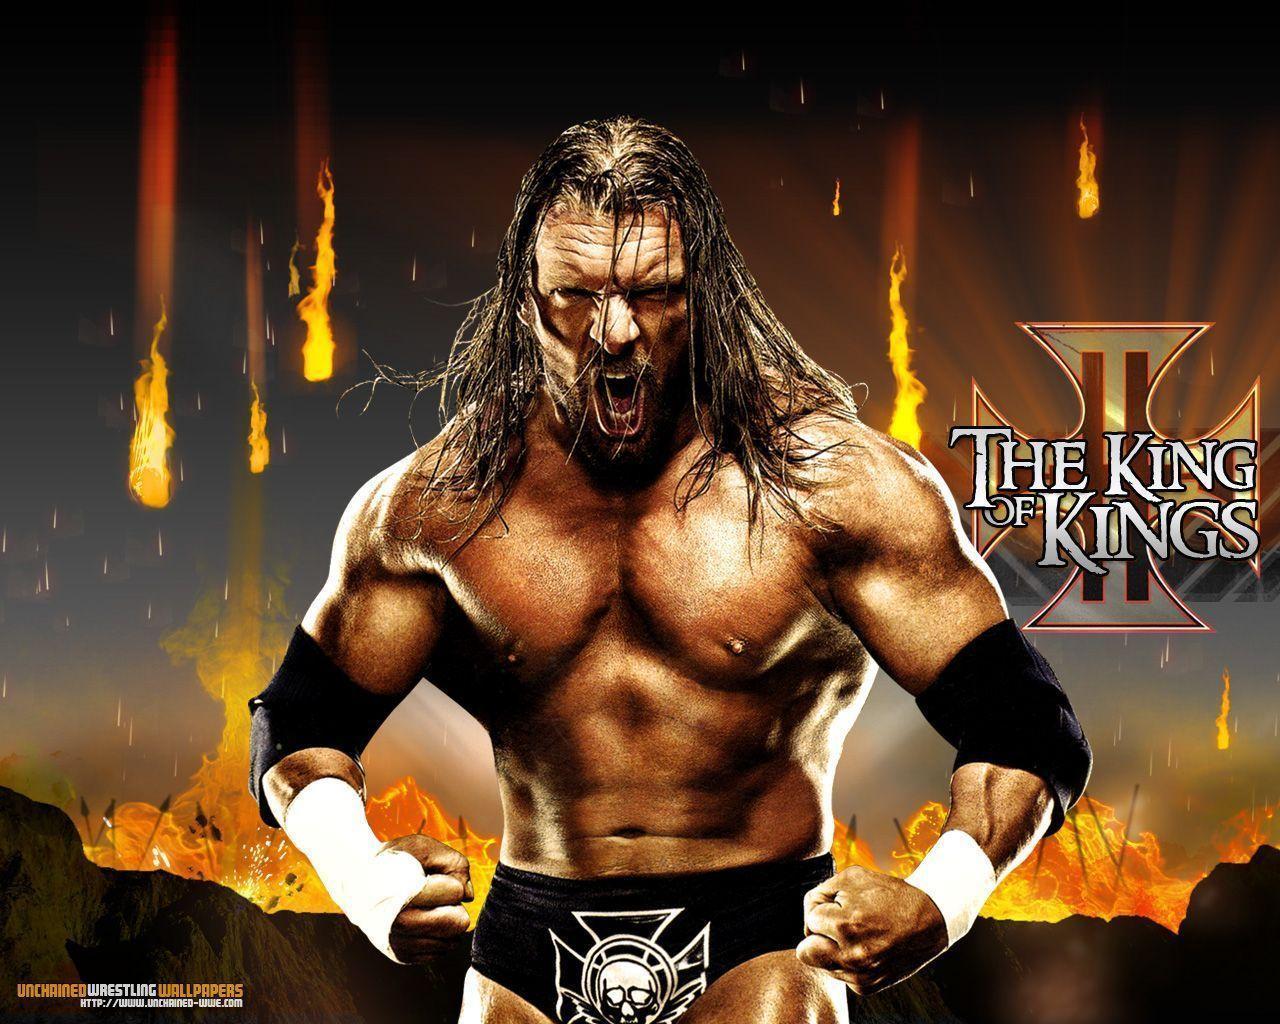 WWE Triple H "Reign Of Fire" Wallpaper Unchained WWE.com WWE